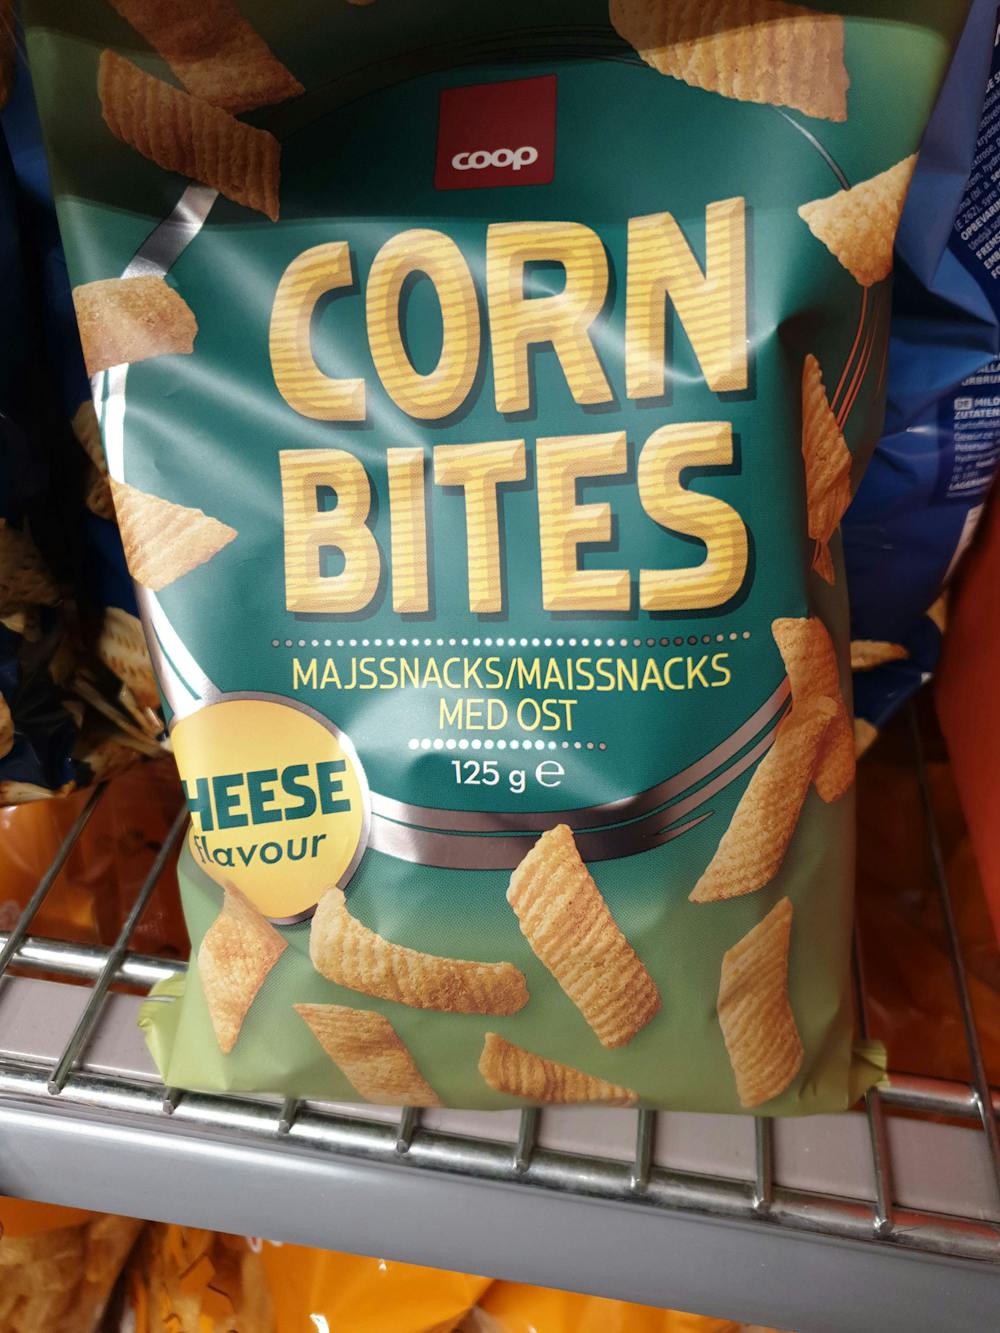 Corn bites, med ost, Coop